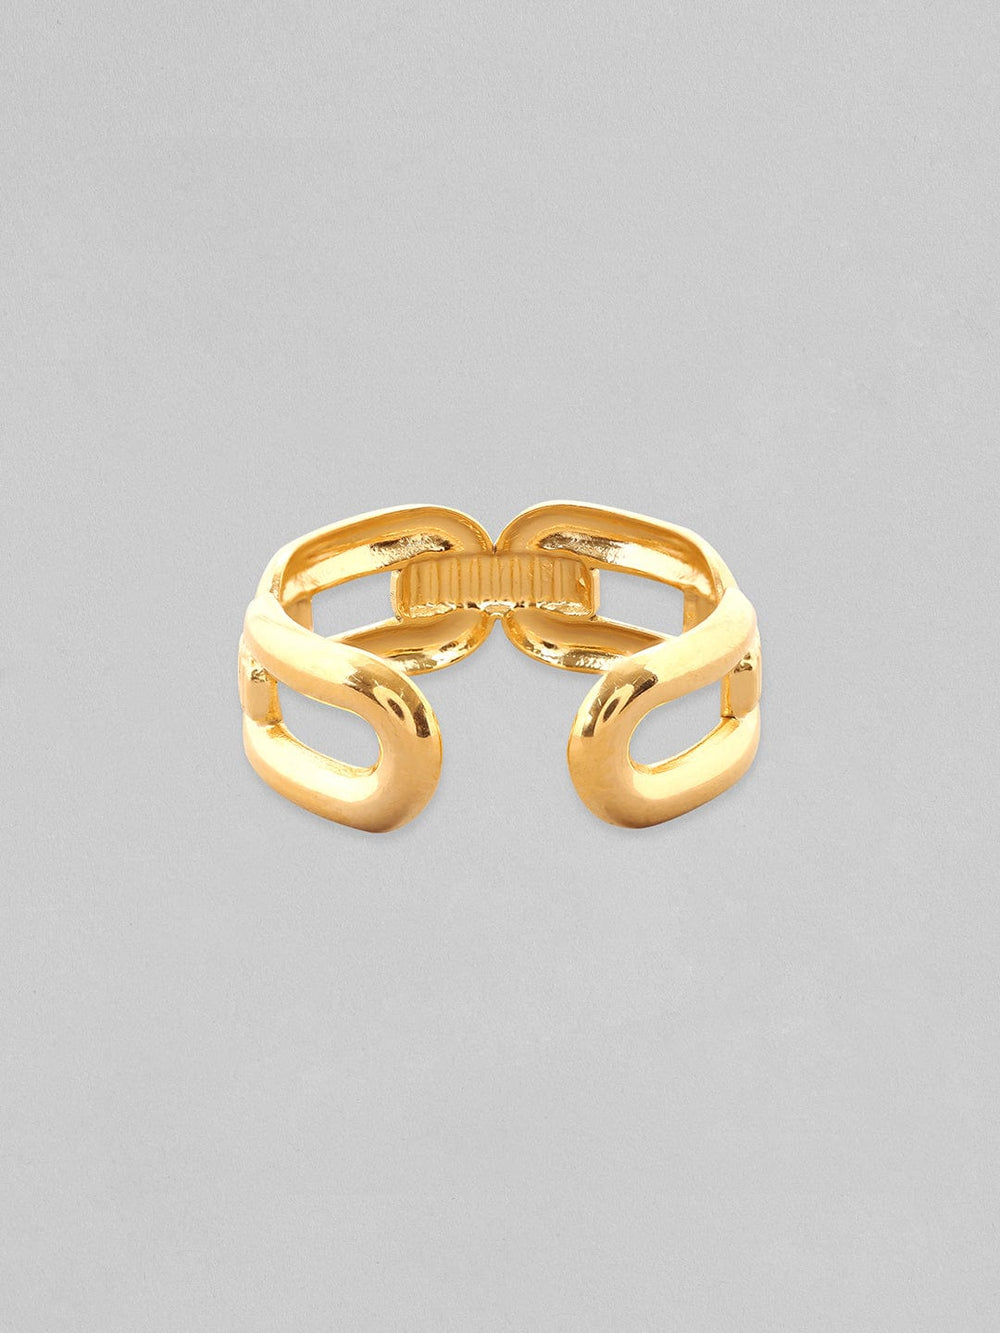 Rubans Voguish 18K Gold-Plated Textured Link Adjustable Finger Ring Rings